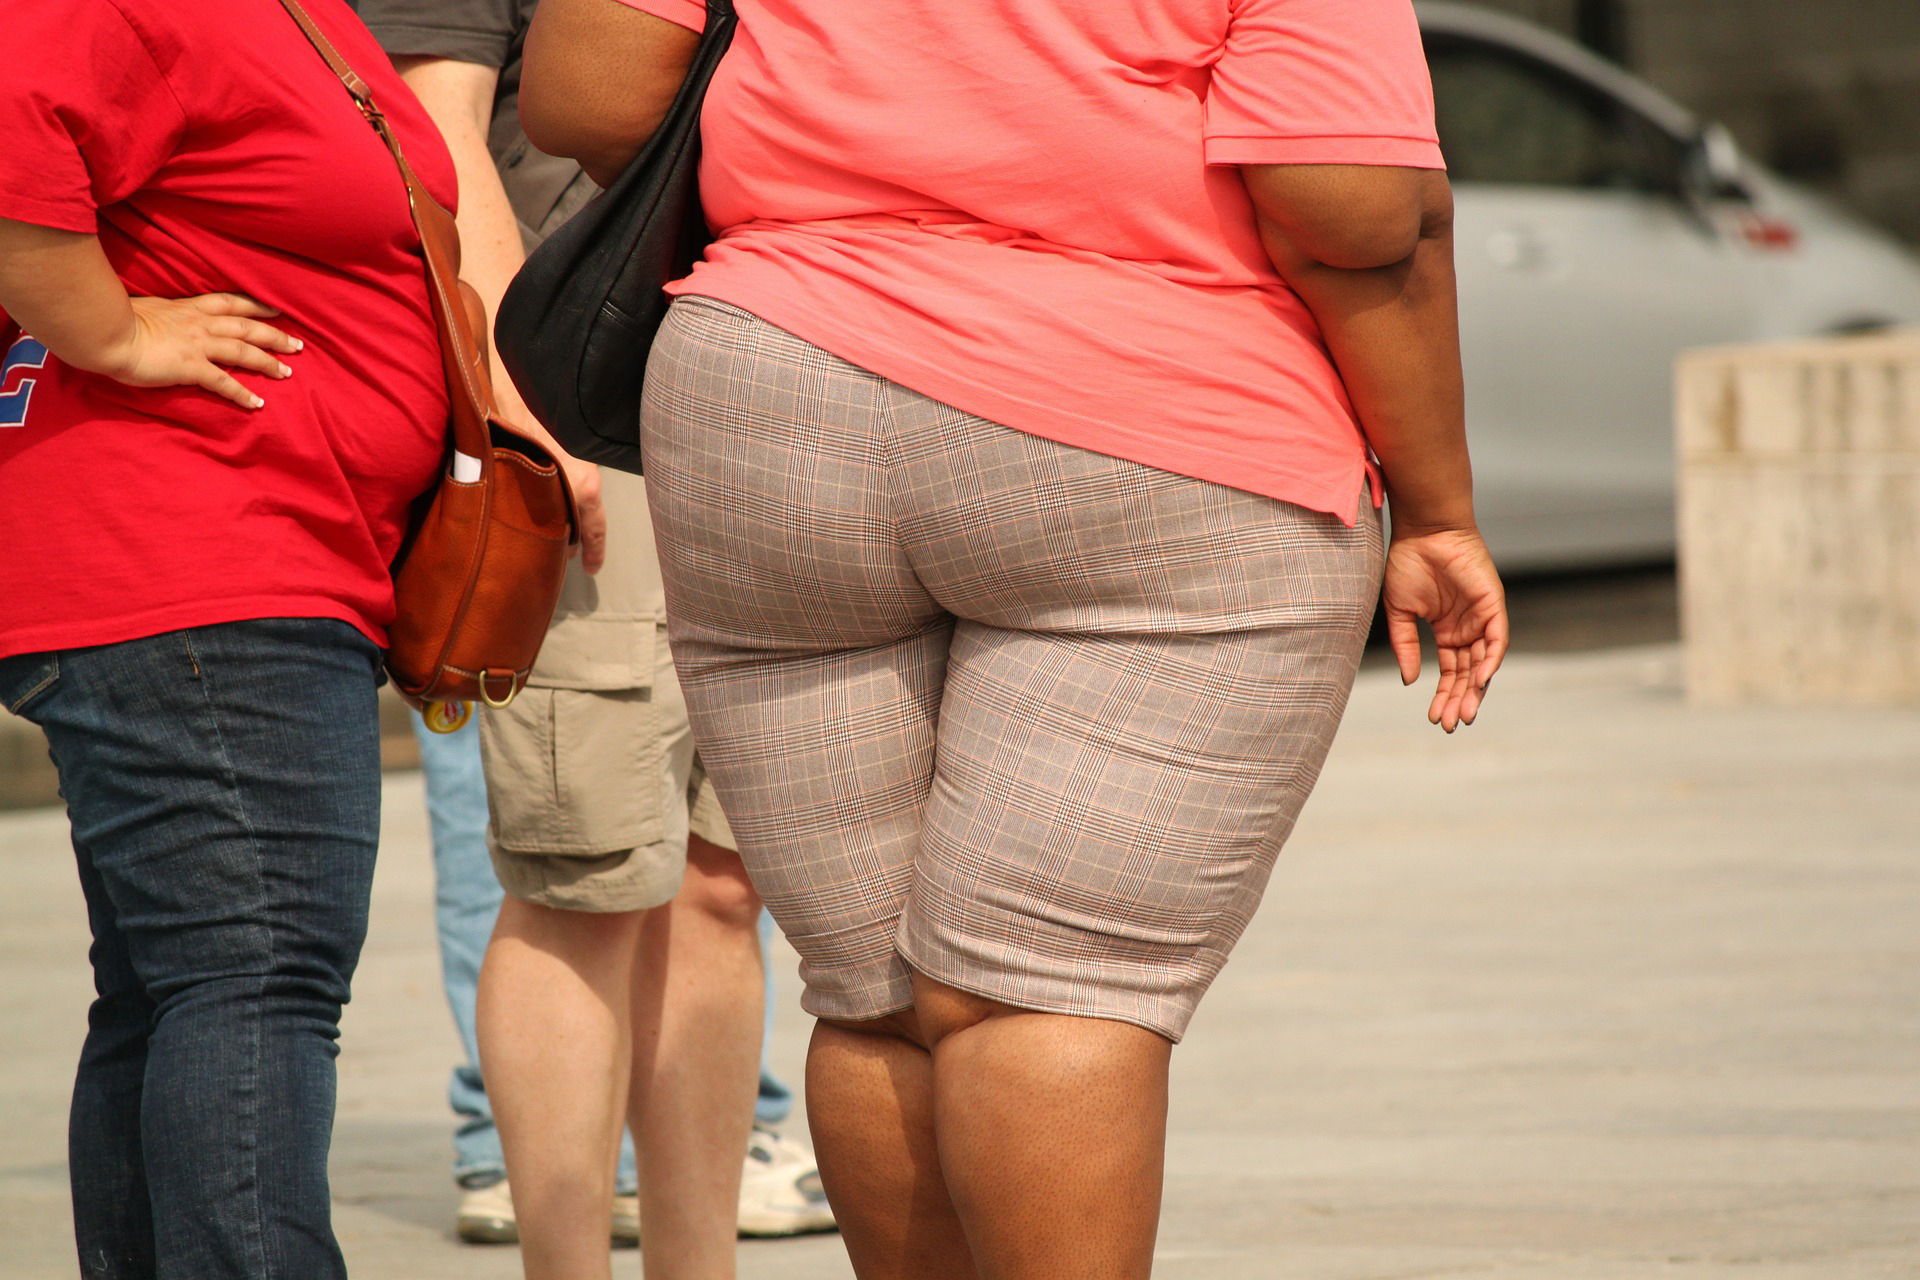 La obesidad se relaciona a otros males altamente mortales como enfermedades cardiovasculares, diabetes y varios tipos de cáncer.